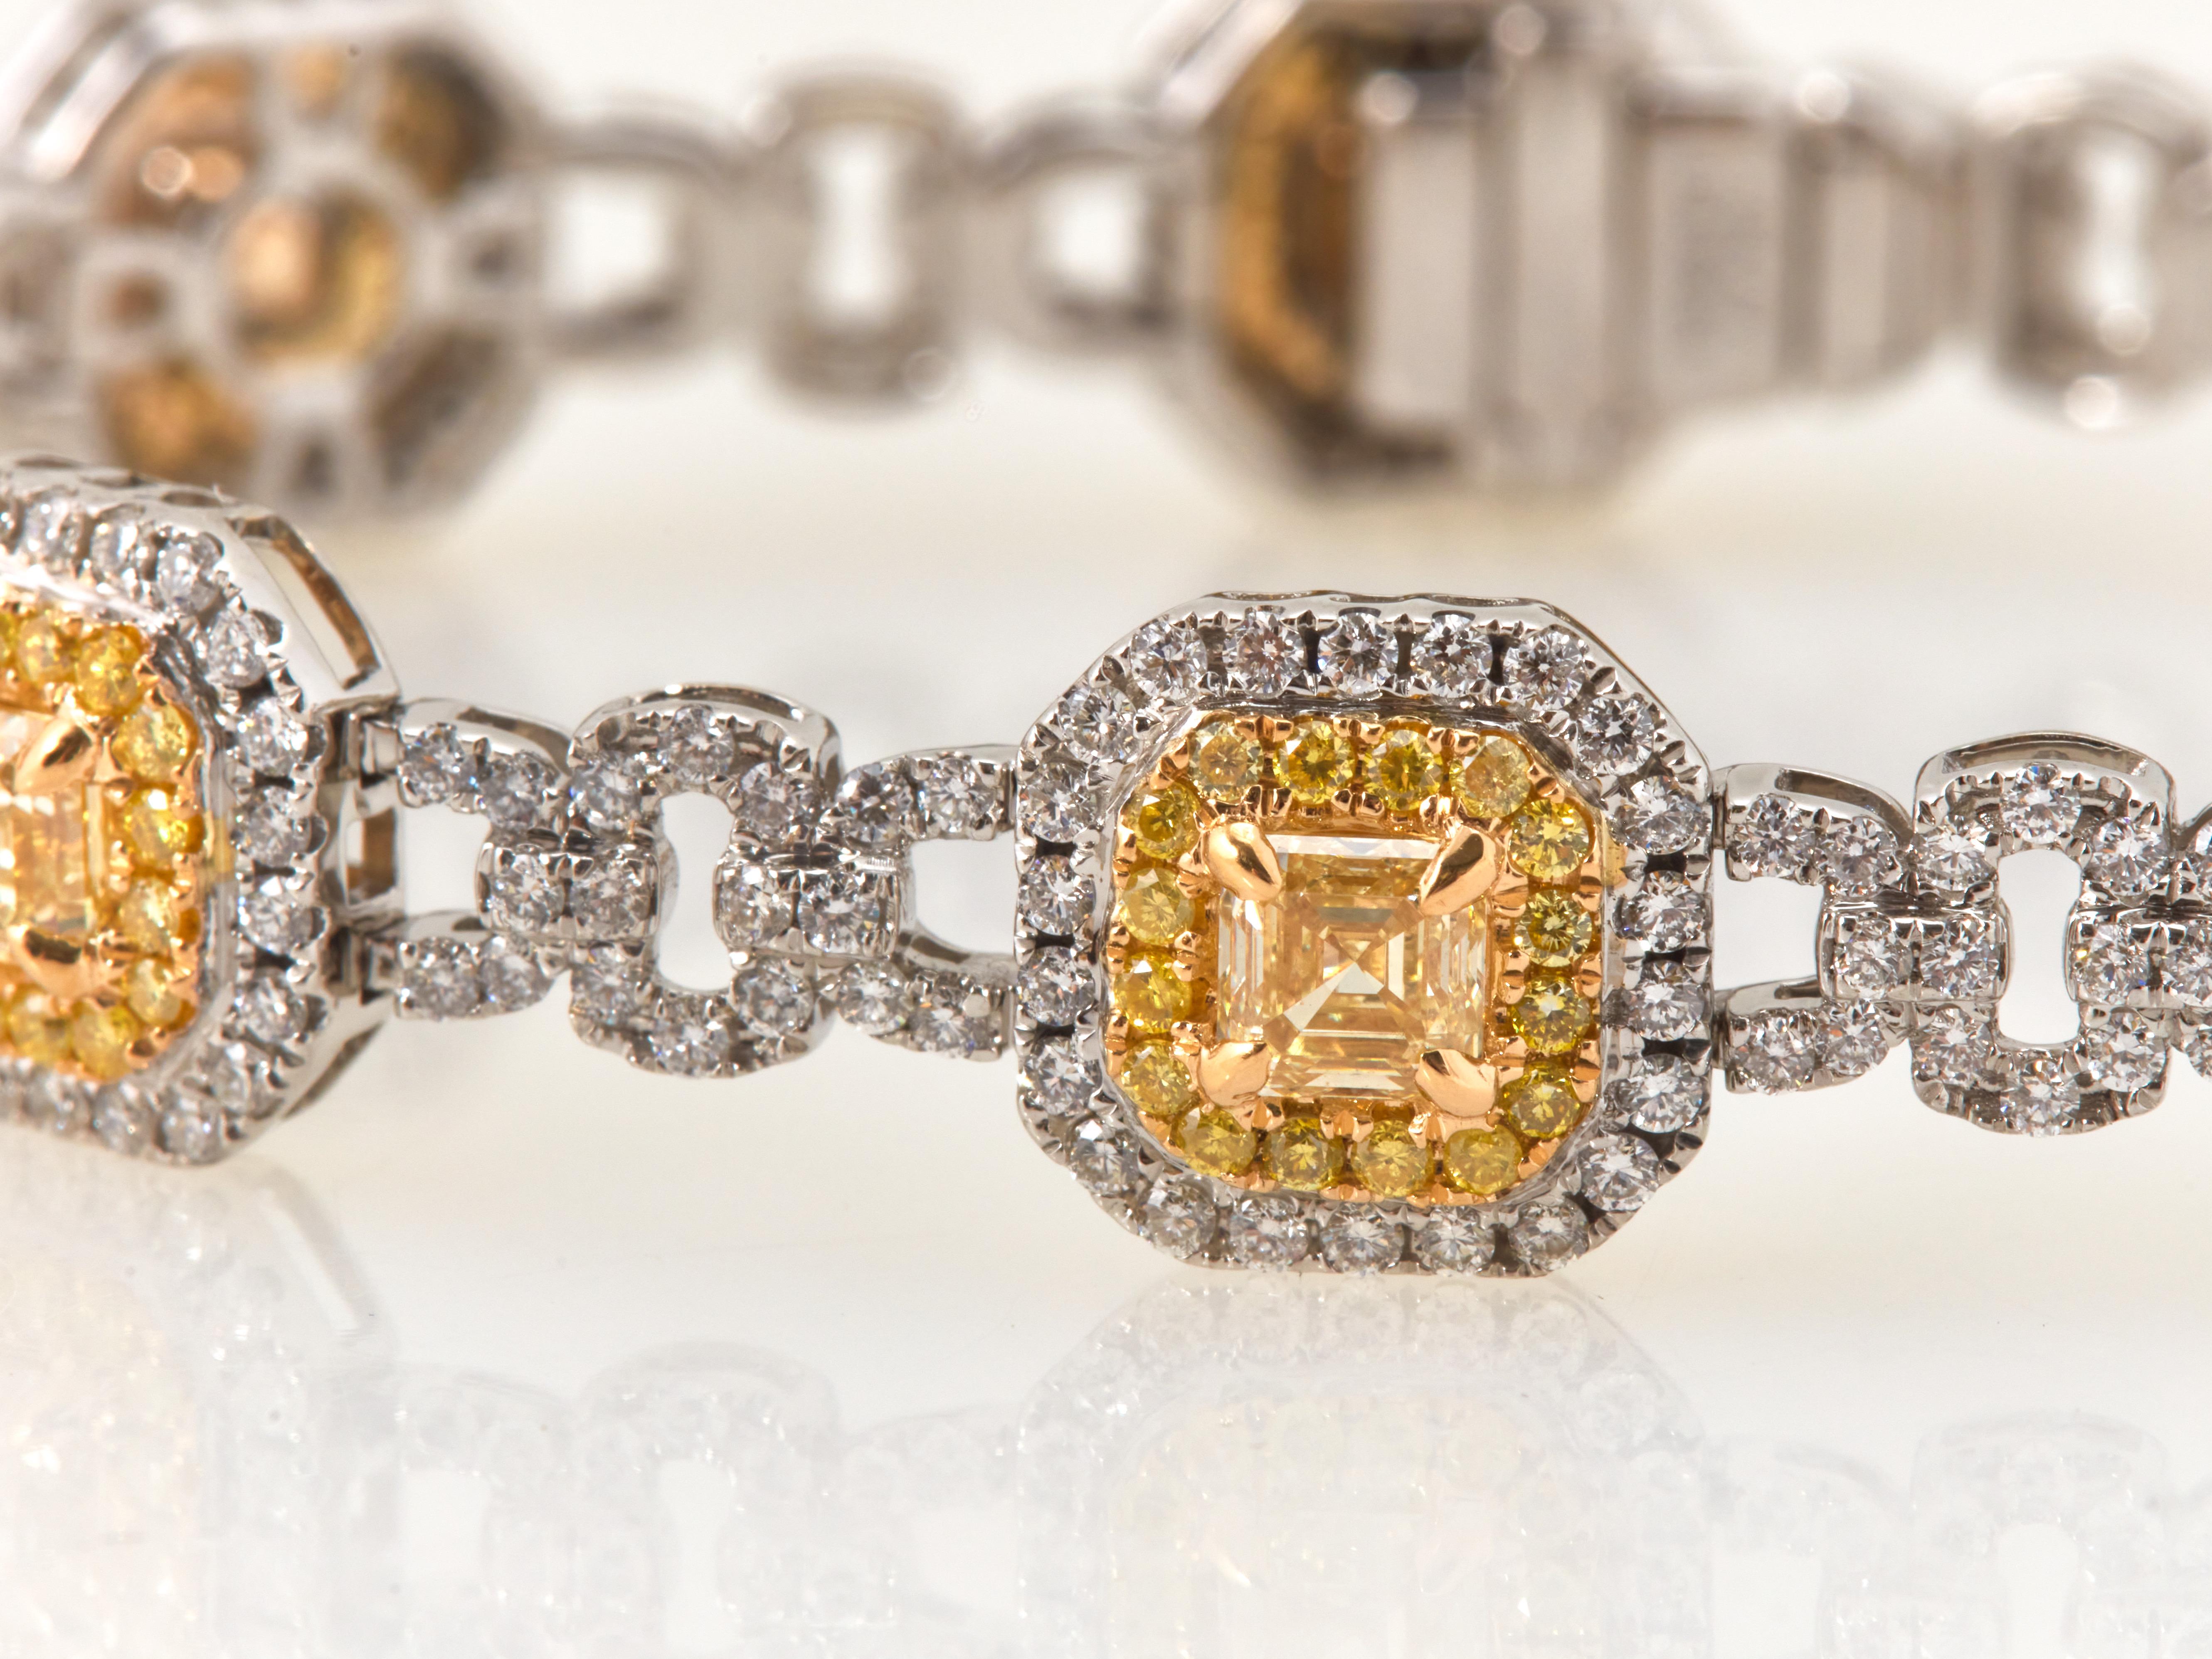 Préparez-vous à être émerveillé par ce superbe bracelet dont le cœur est constitué d'un éblouissant diamant jaune fantaisie de 4,93 carats. Chaque diamant jaune est amoureusement entouré d'une monture en or blanc et jaune 18 carats, avec un halo de